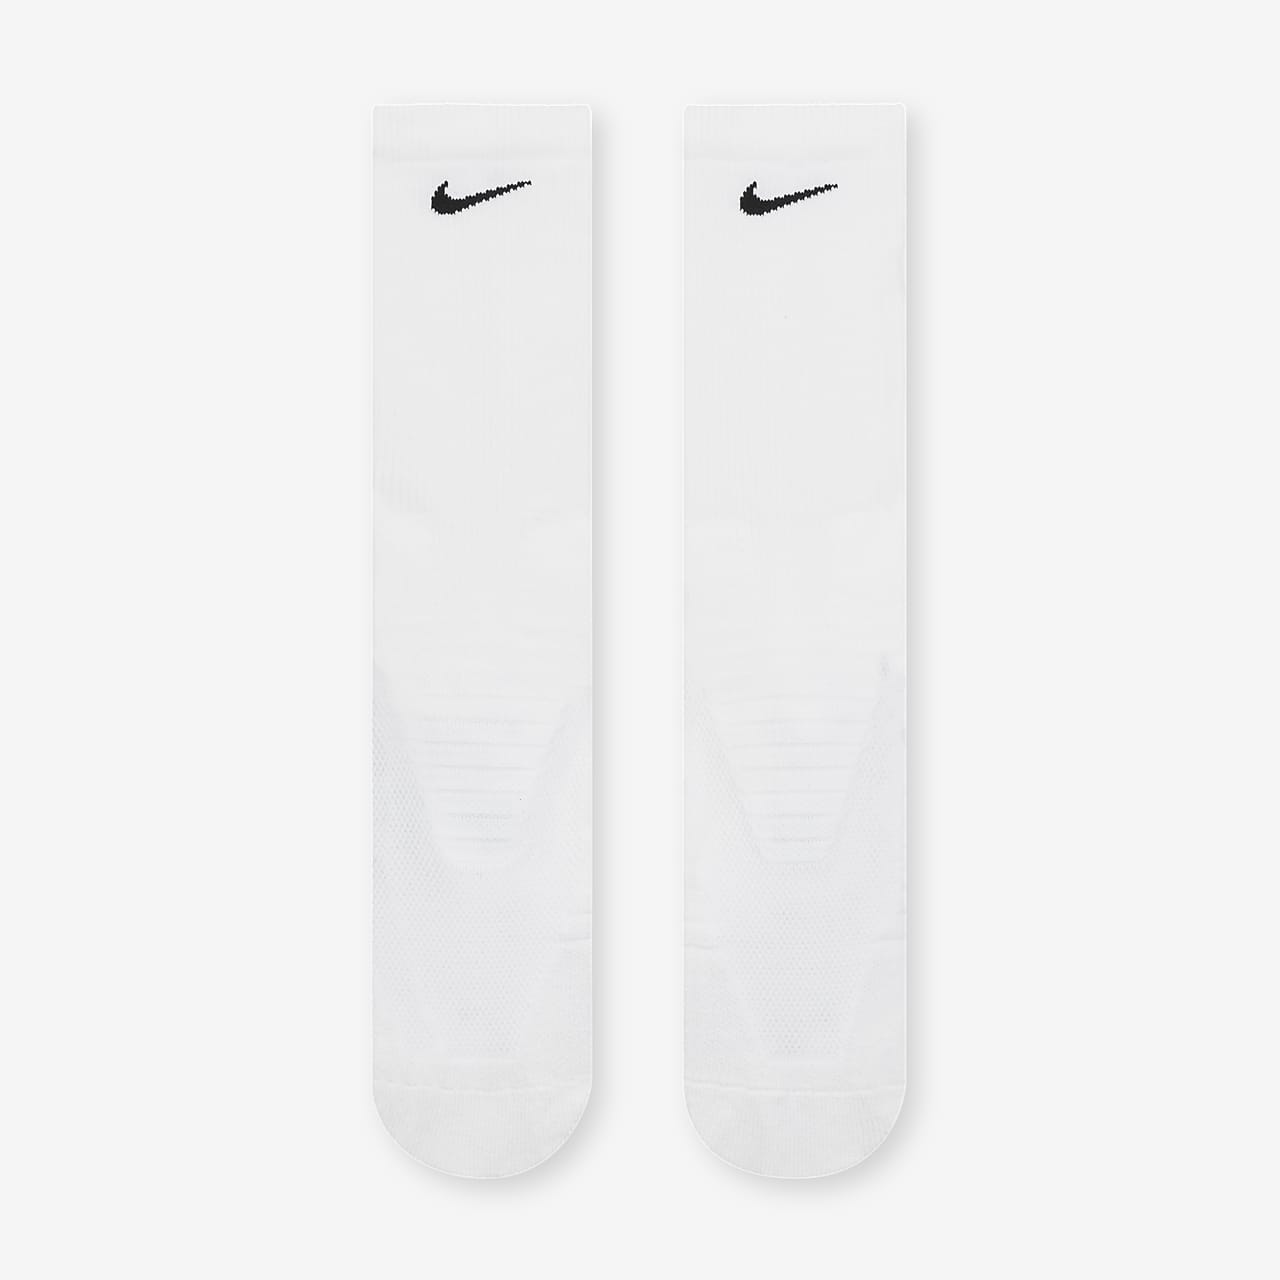 Nike Vapor Crew Men's Football Socks 